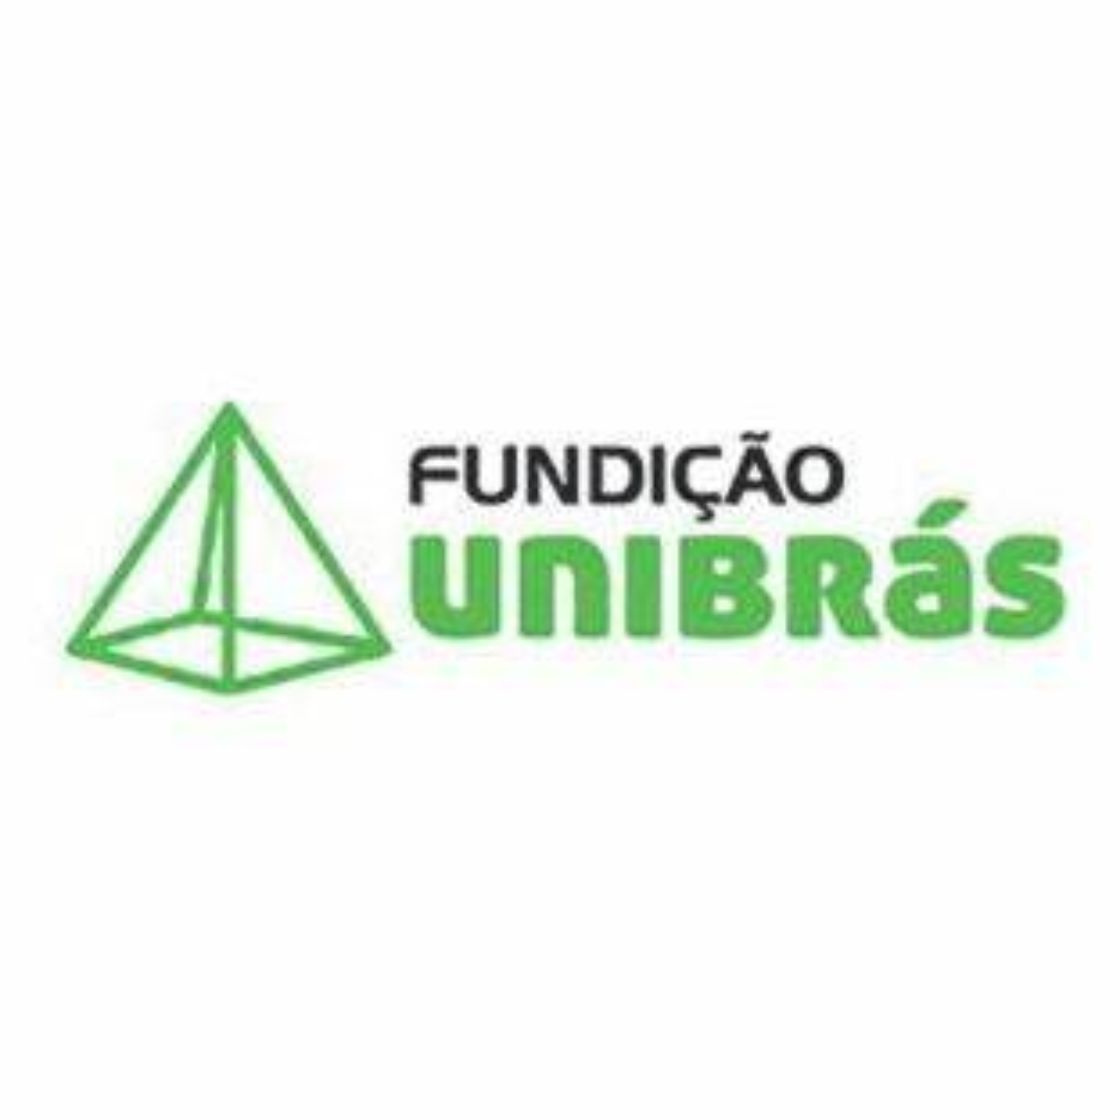 Fundição Unibrás Ltda